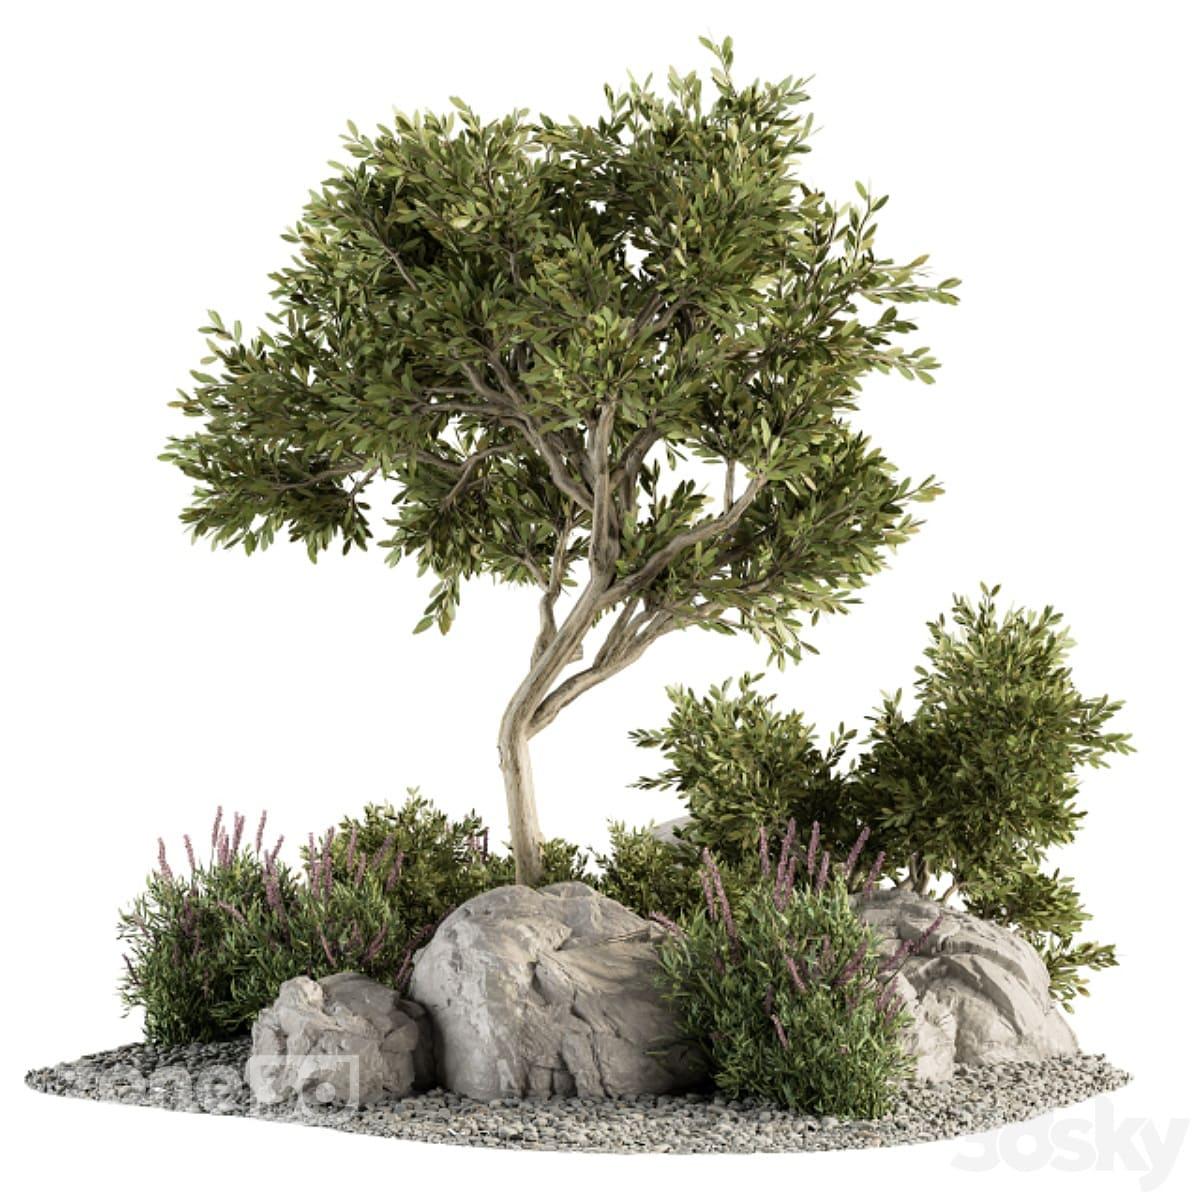 آبجکت درختچه به همراه گیاهان بوته ای و قلوه سنگ برای باغچه محوطه